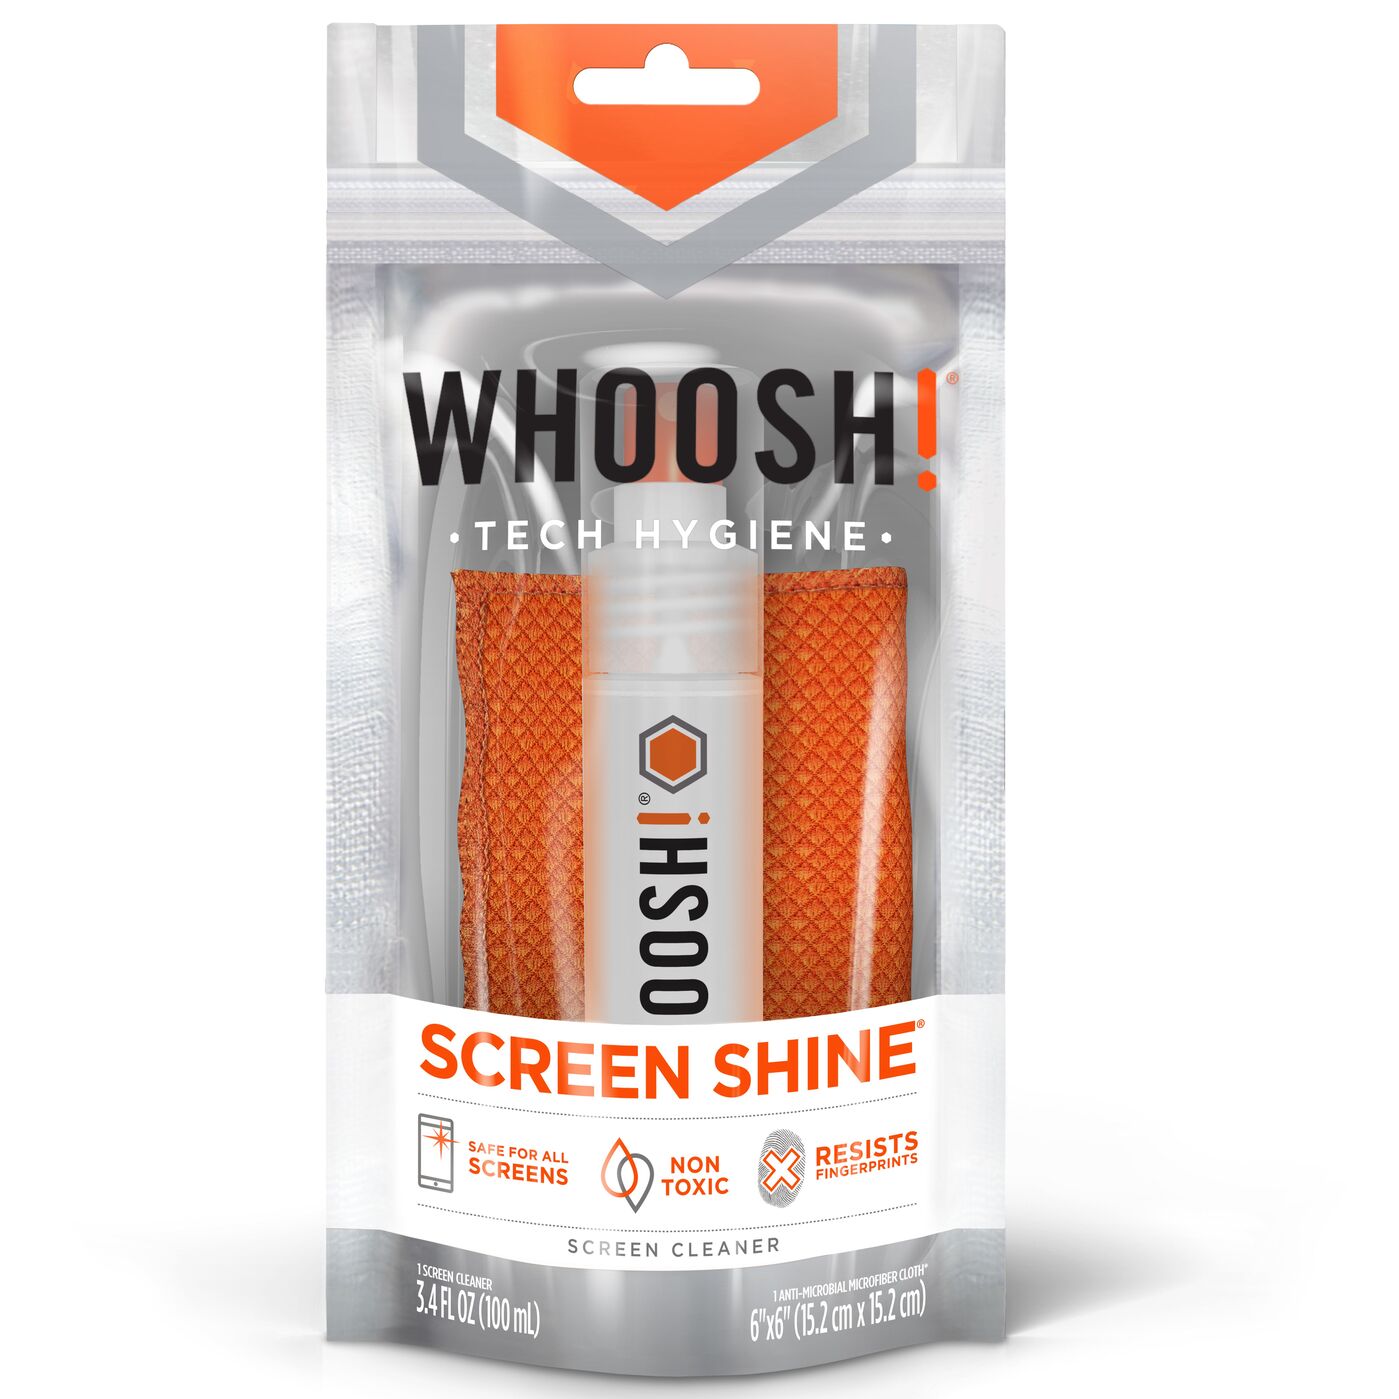 WHOOSH! Screen Shine On the Go XL Screen Cleaner - 100 ml